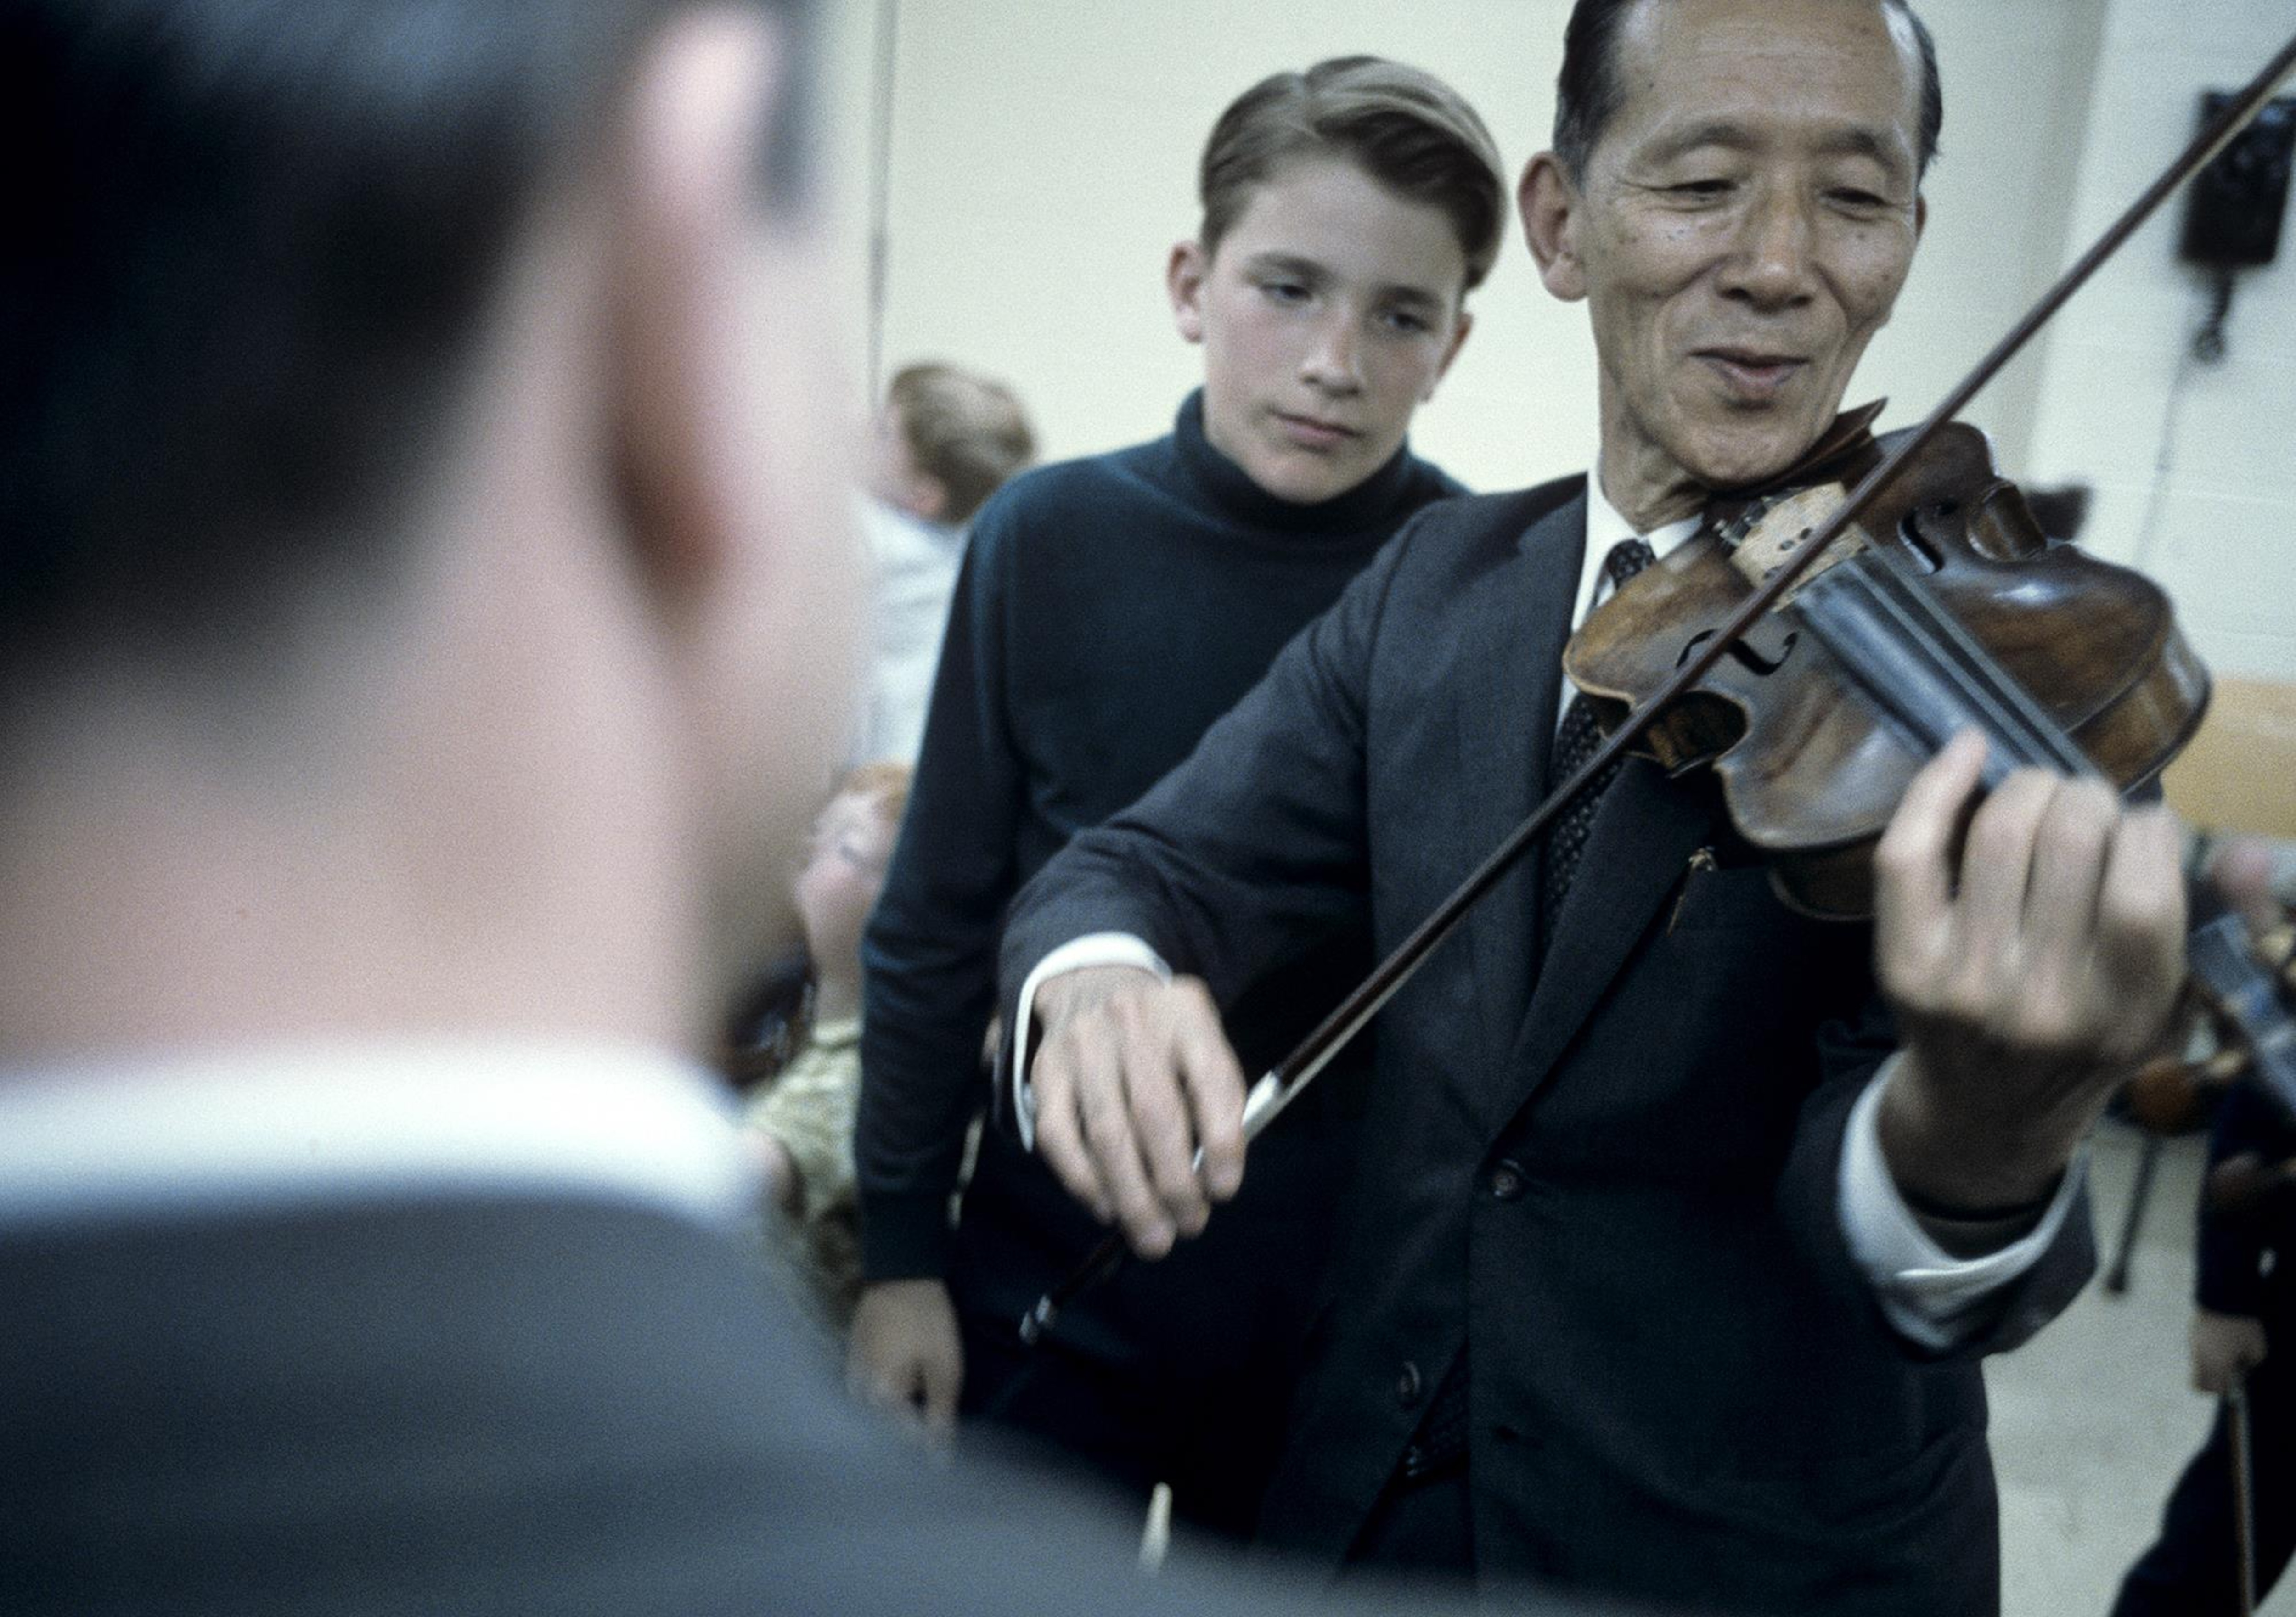 Un professeur de musique avec un violon entre les mains est devant un jeune garçon.